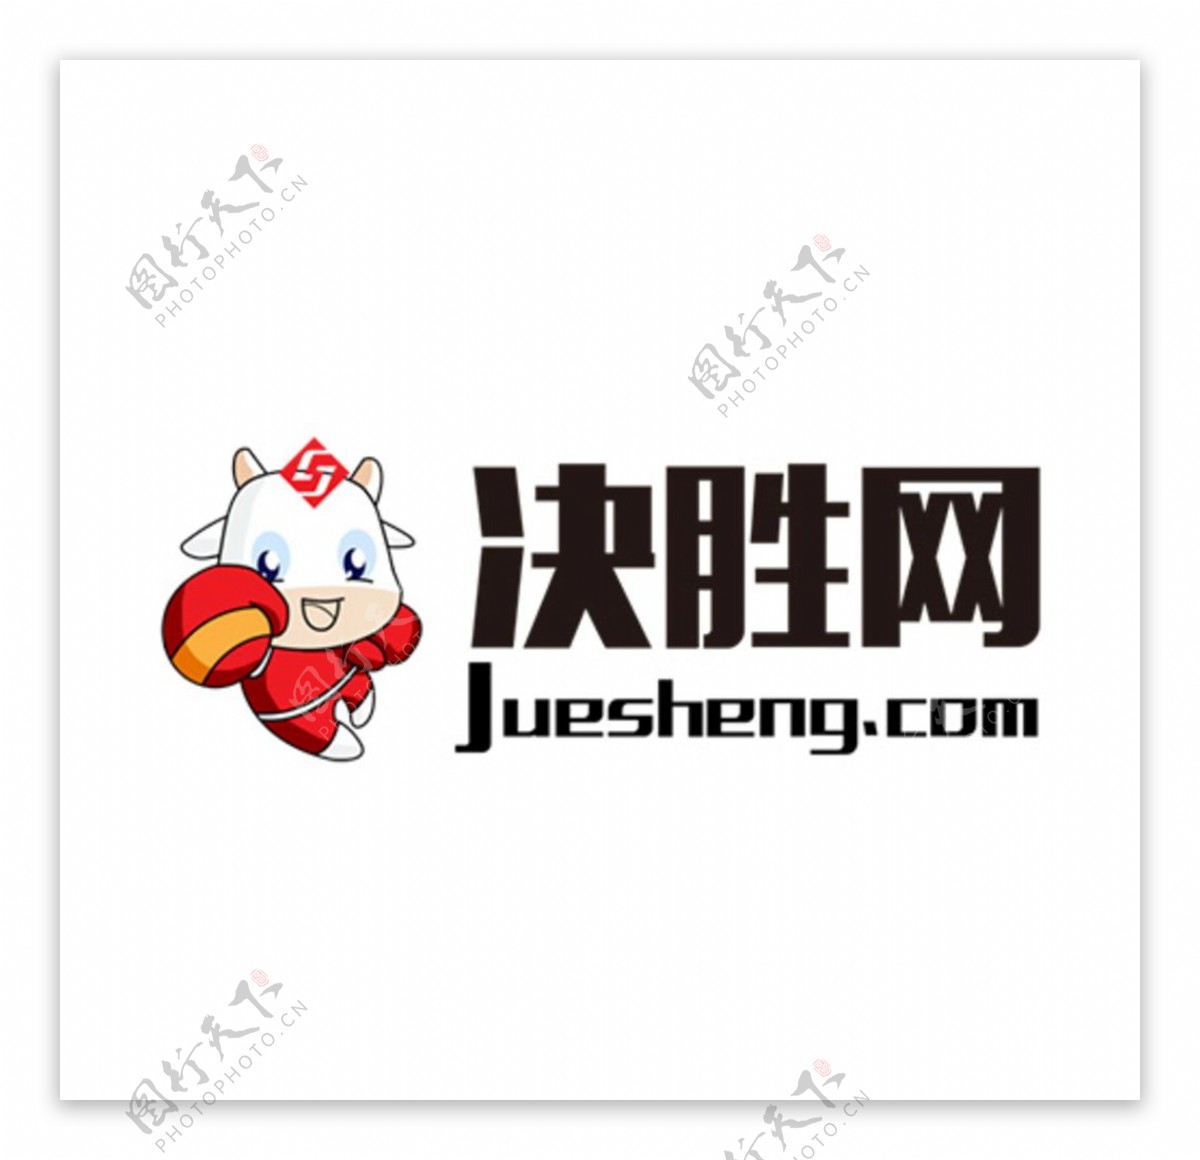 决胜网logo吉祥物